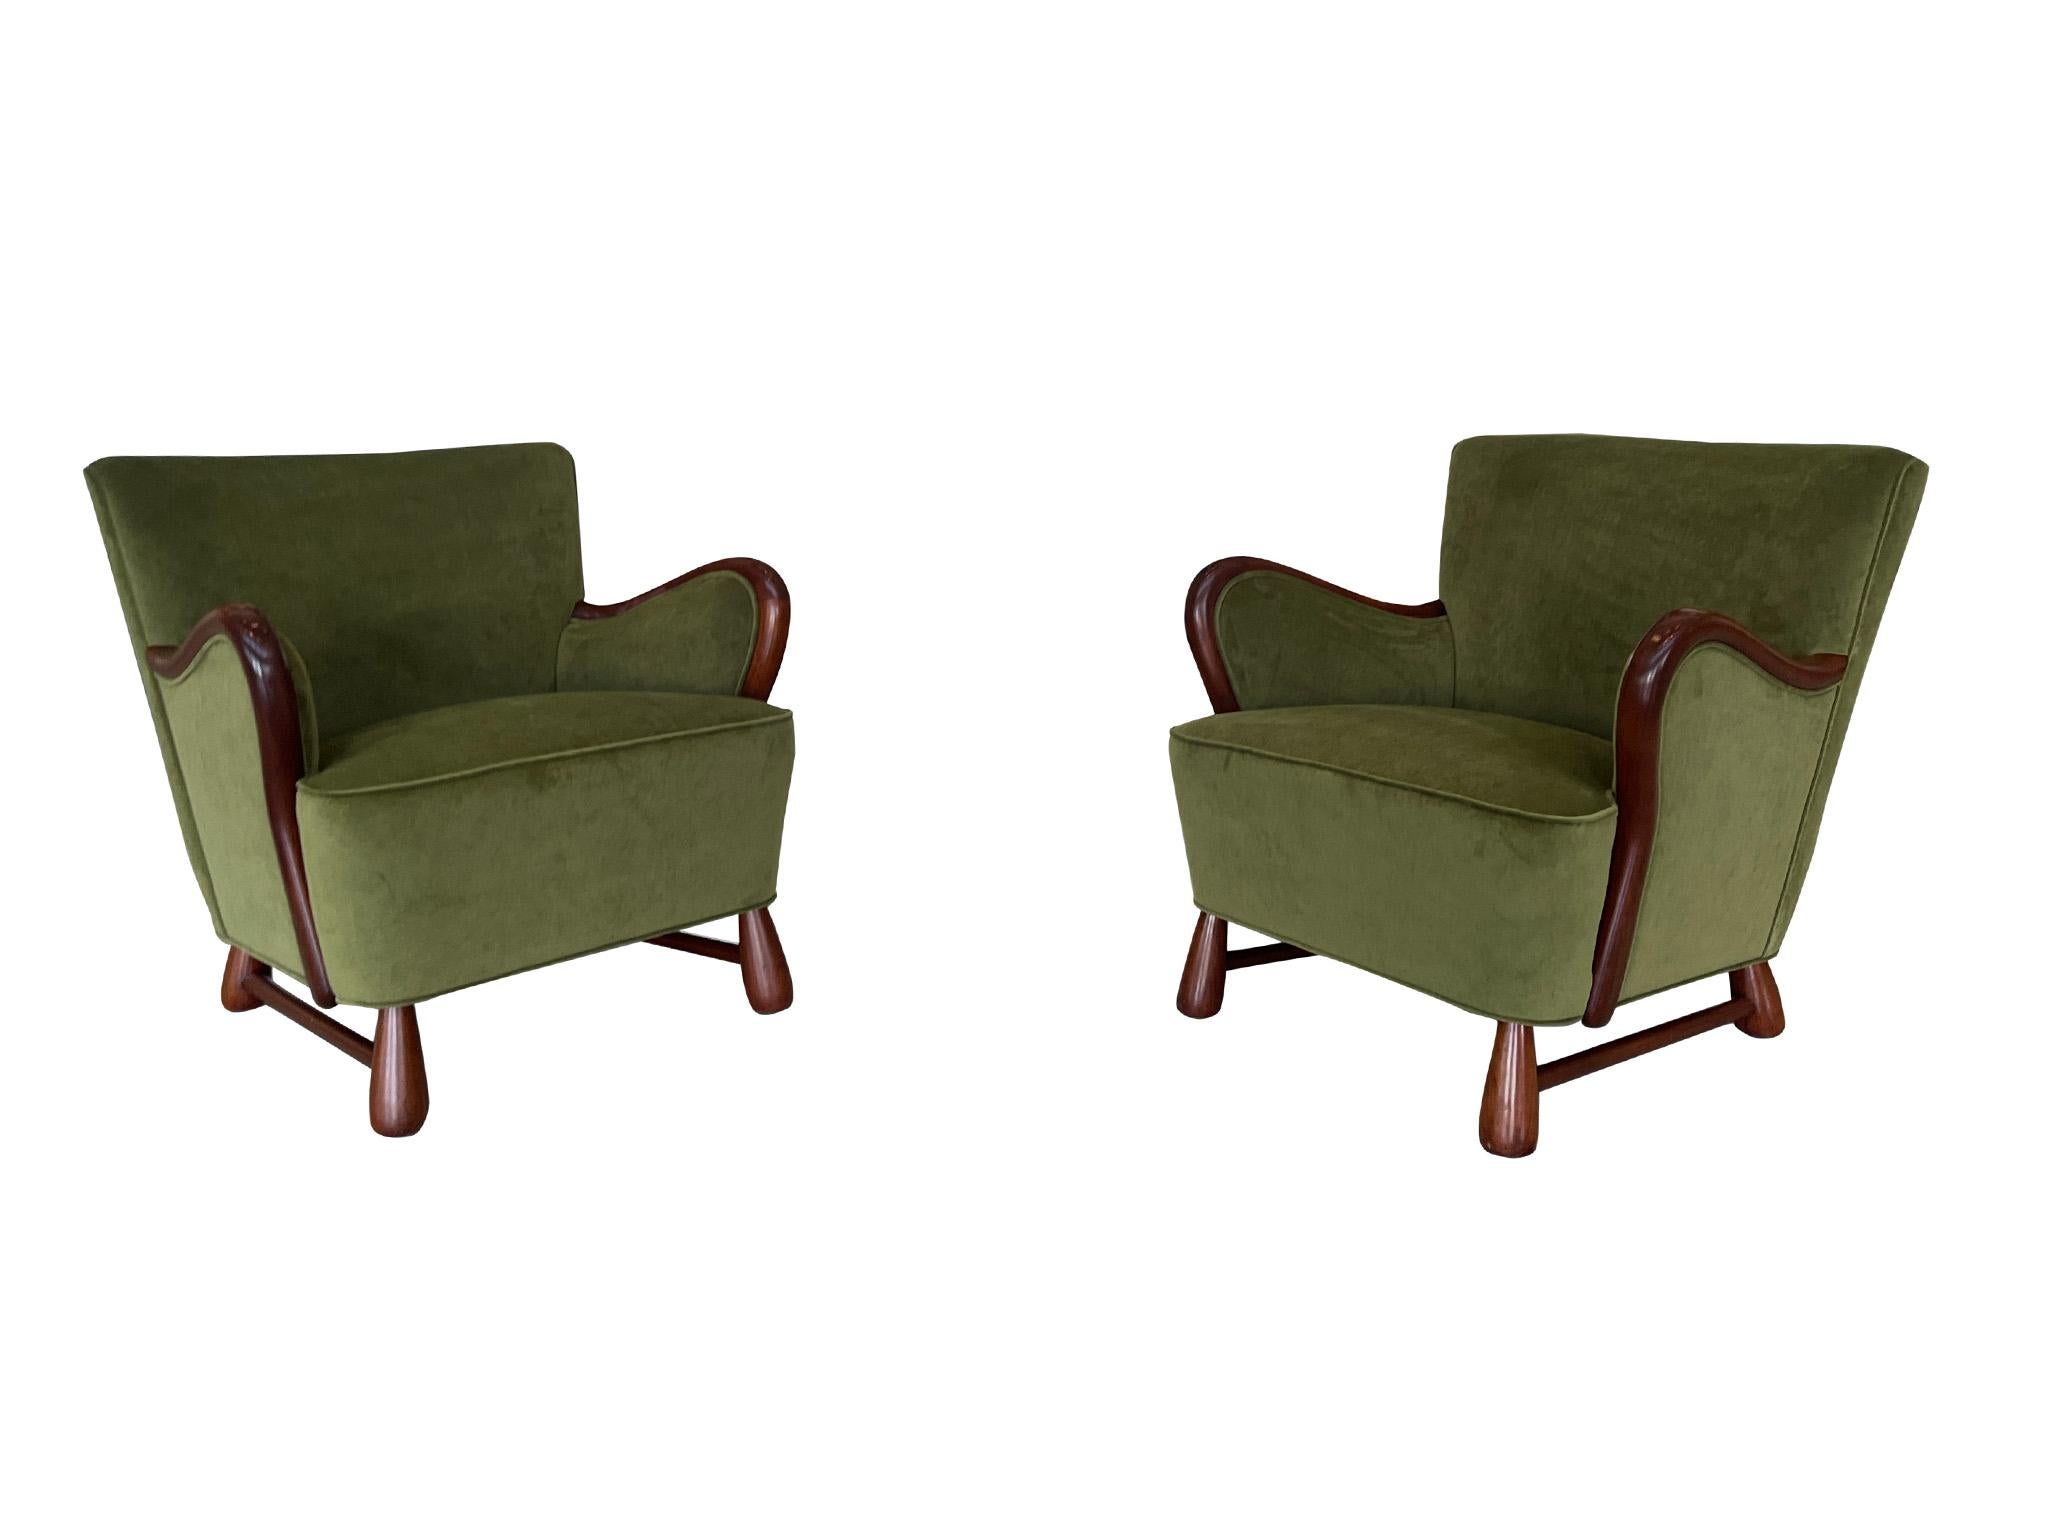 Merveilleuse et rare paire de fauteuils danois de style Art déco des années 1940, attribués à l'ébéniste Otto Færge. Construites en acajou et récemment retapissées dans un luxueux velours mohair vert mousse, ces chaises sont un exemple étonnant de